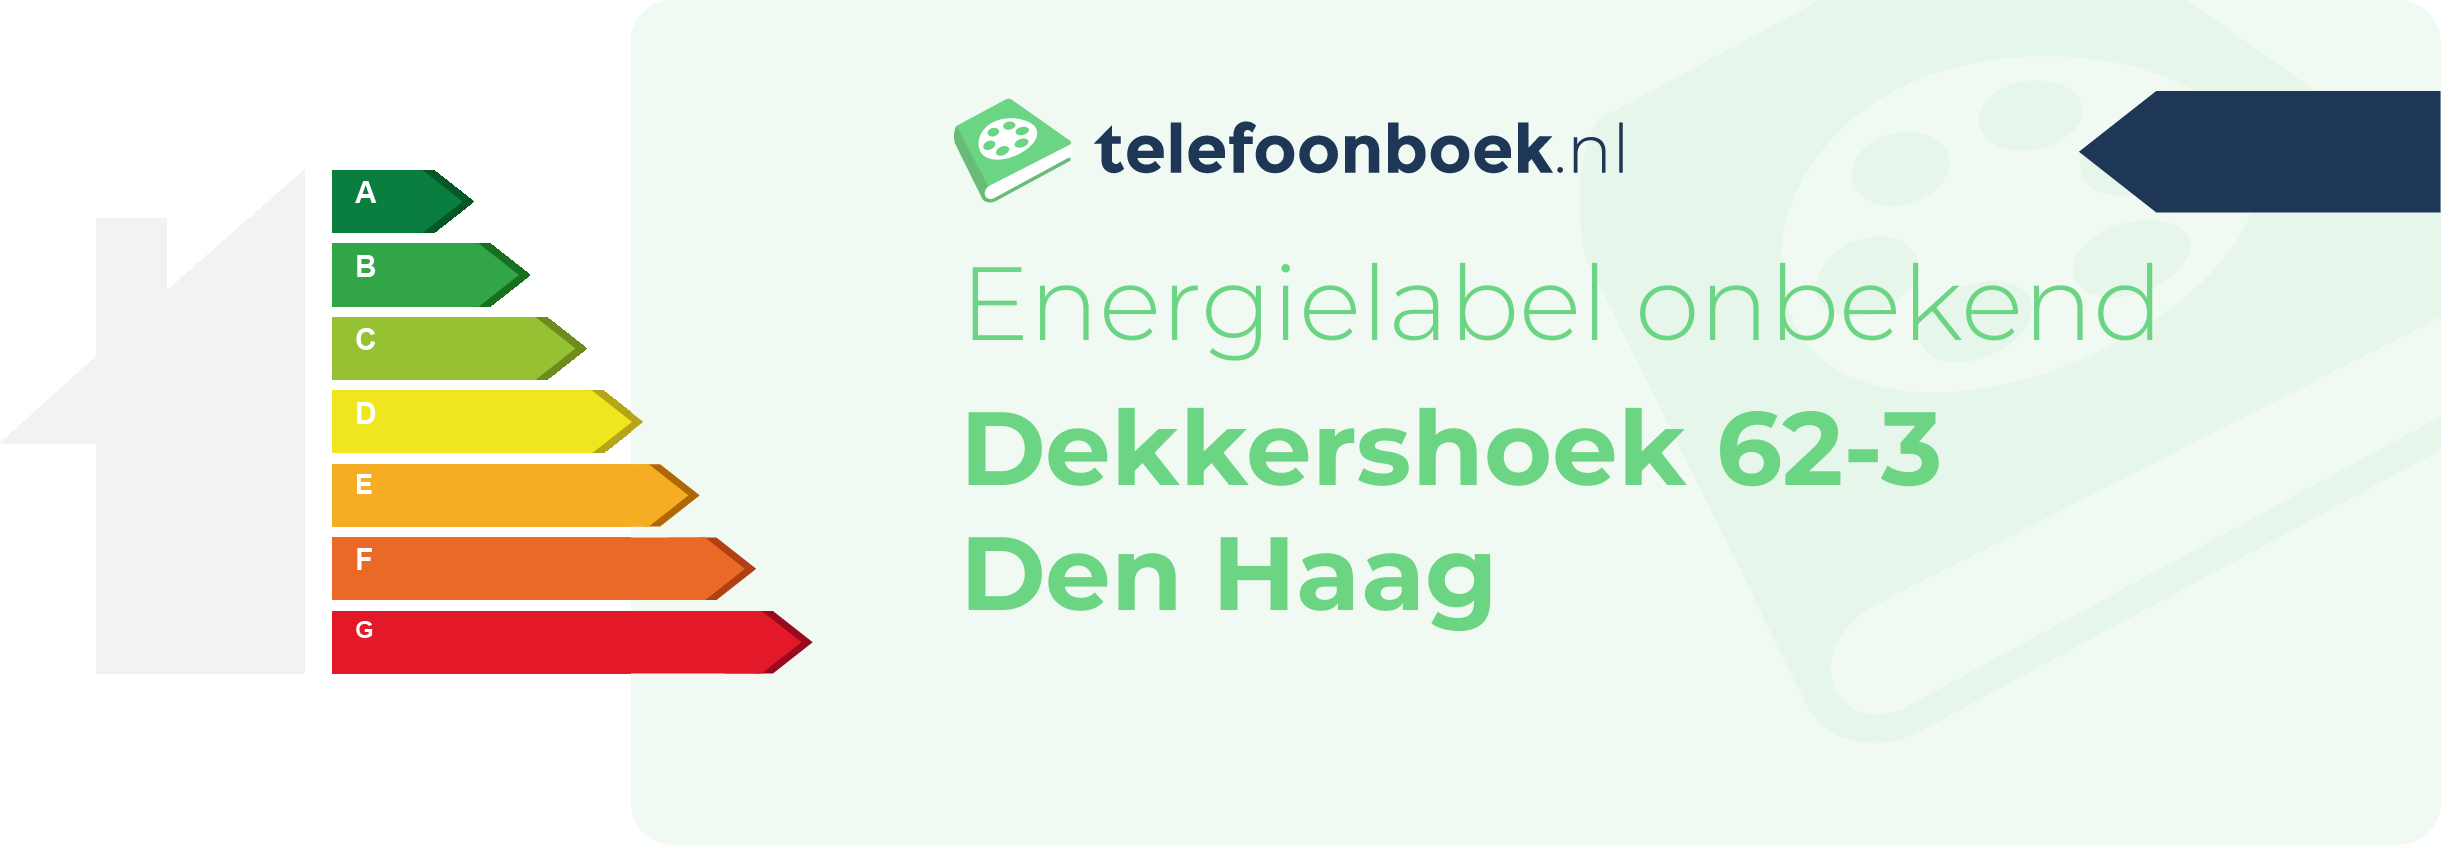 Energielabel Dekkershoek 62-3 Den Haag